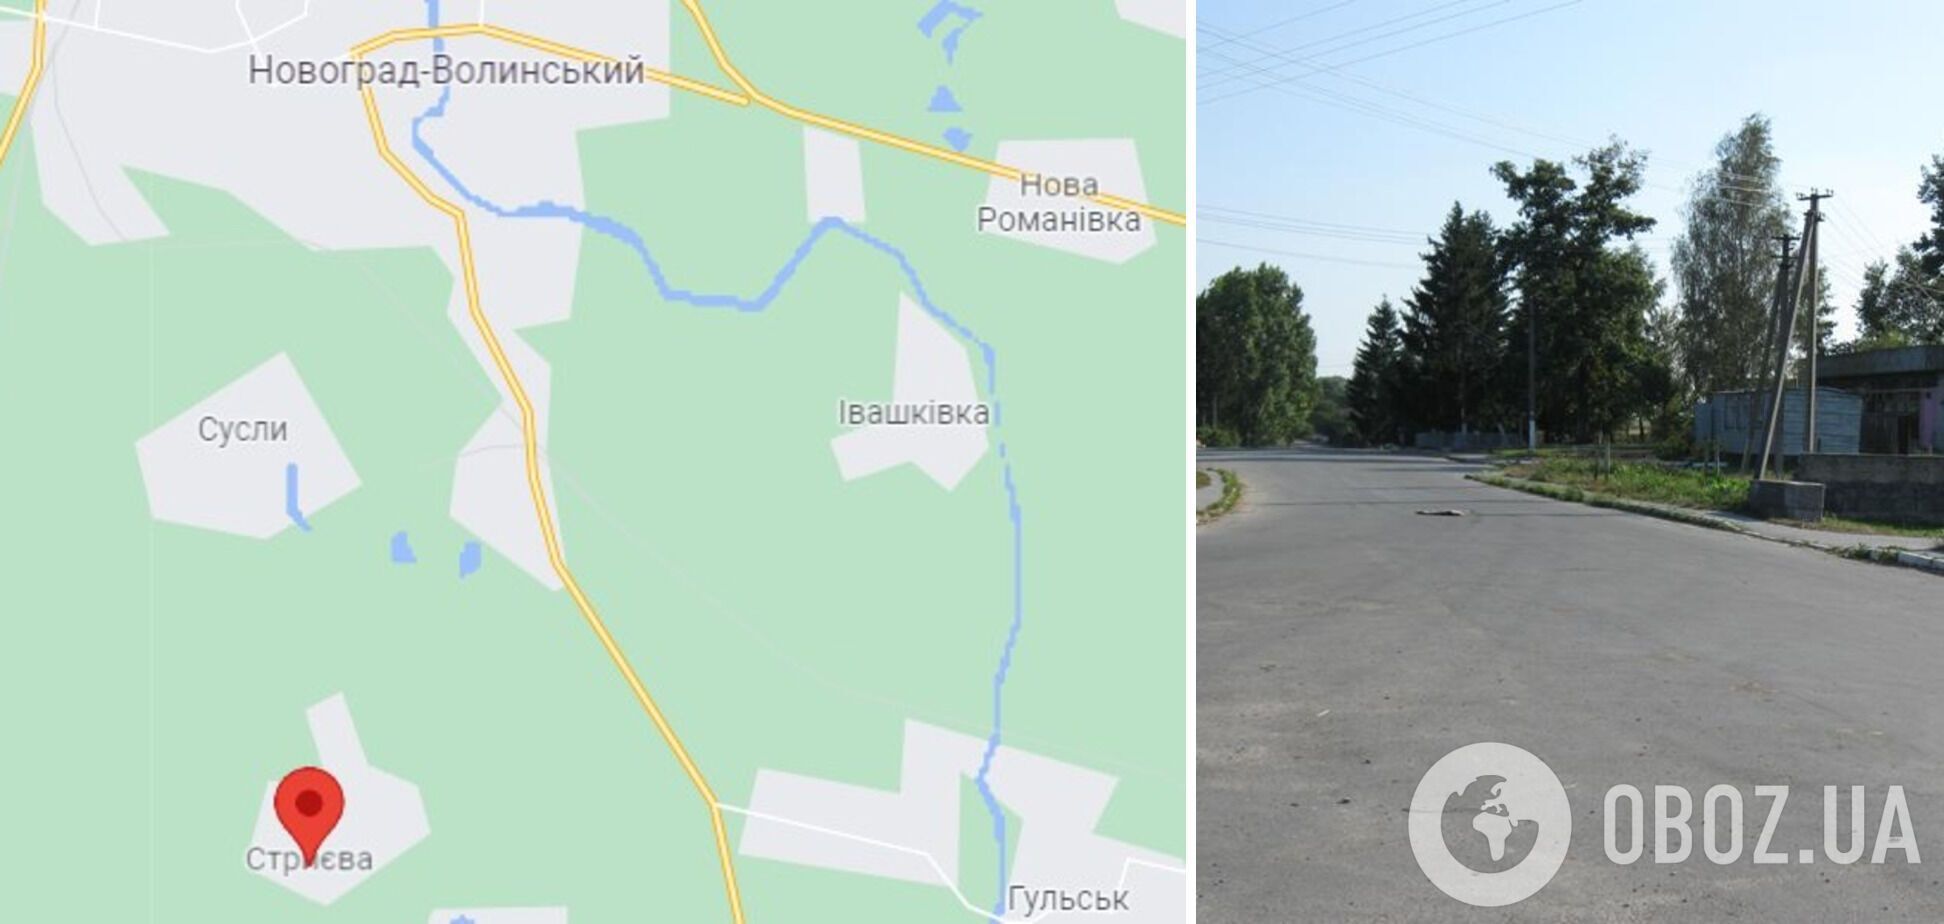 Випадок трапився у селі Стриєва Новоград-Волинського району